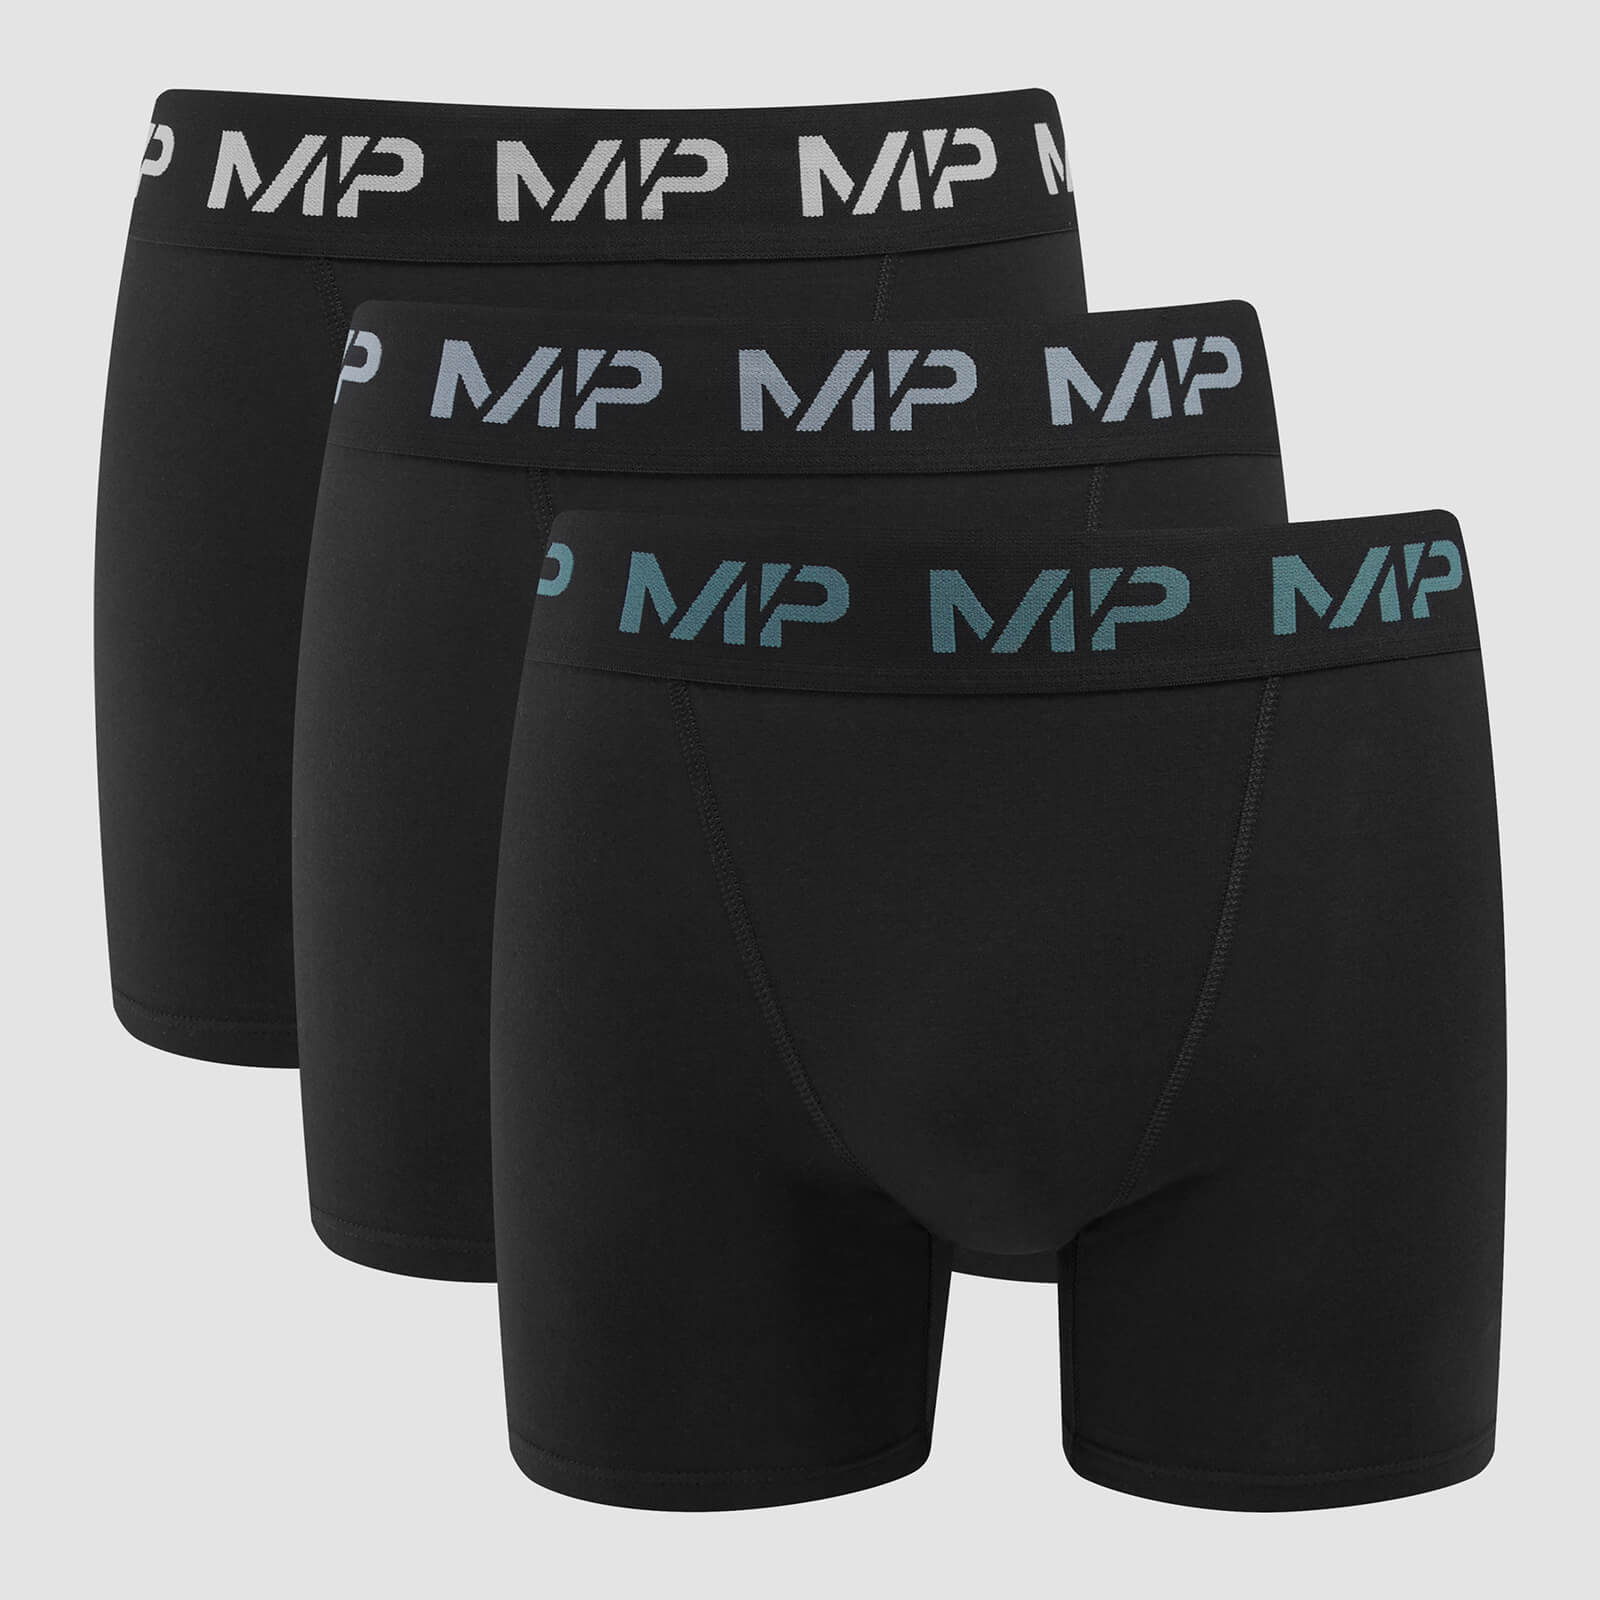 MP muške bokserice u boji s logotipom (3 pakiranja) Crna/Sivo plava/Šljunčano plava/Sumrak siva - S